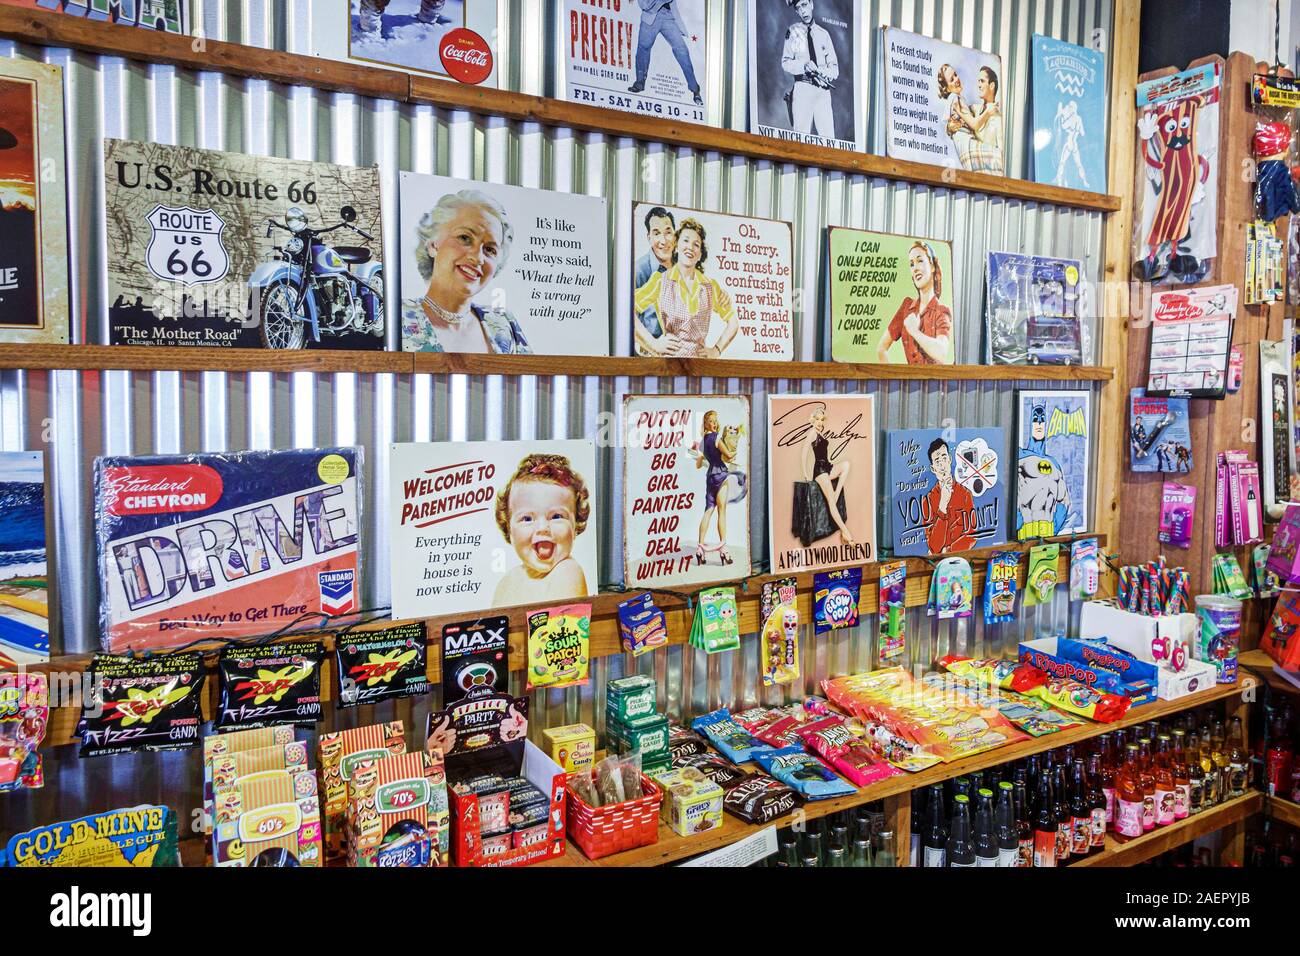 Orlando Winter Park Florida, Rocket Fizz Soda Pop & Candy Shop, magasin de friandises spécialisé, rétro, 60s nostalgie, ancienne tendance, intérieur intérieur, reproduction Banque D'Images